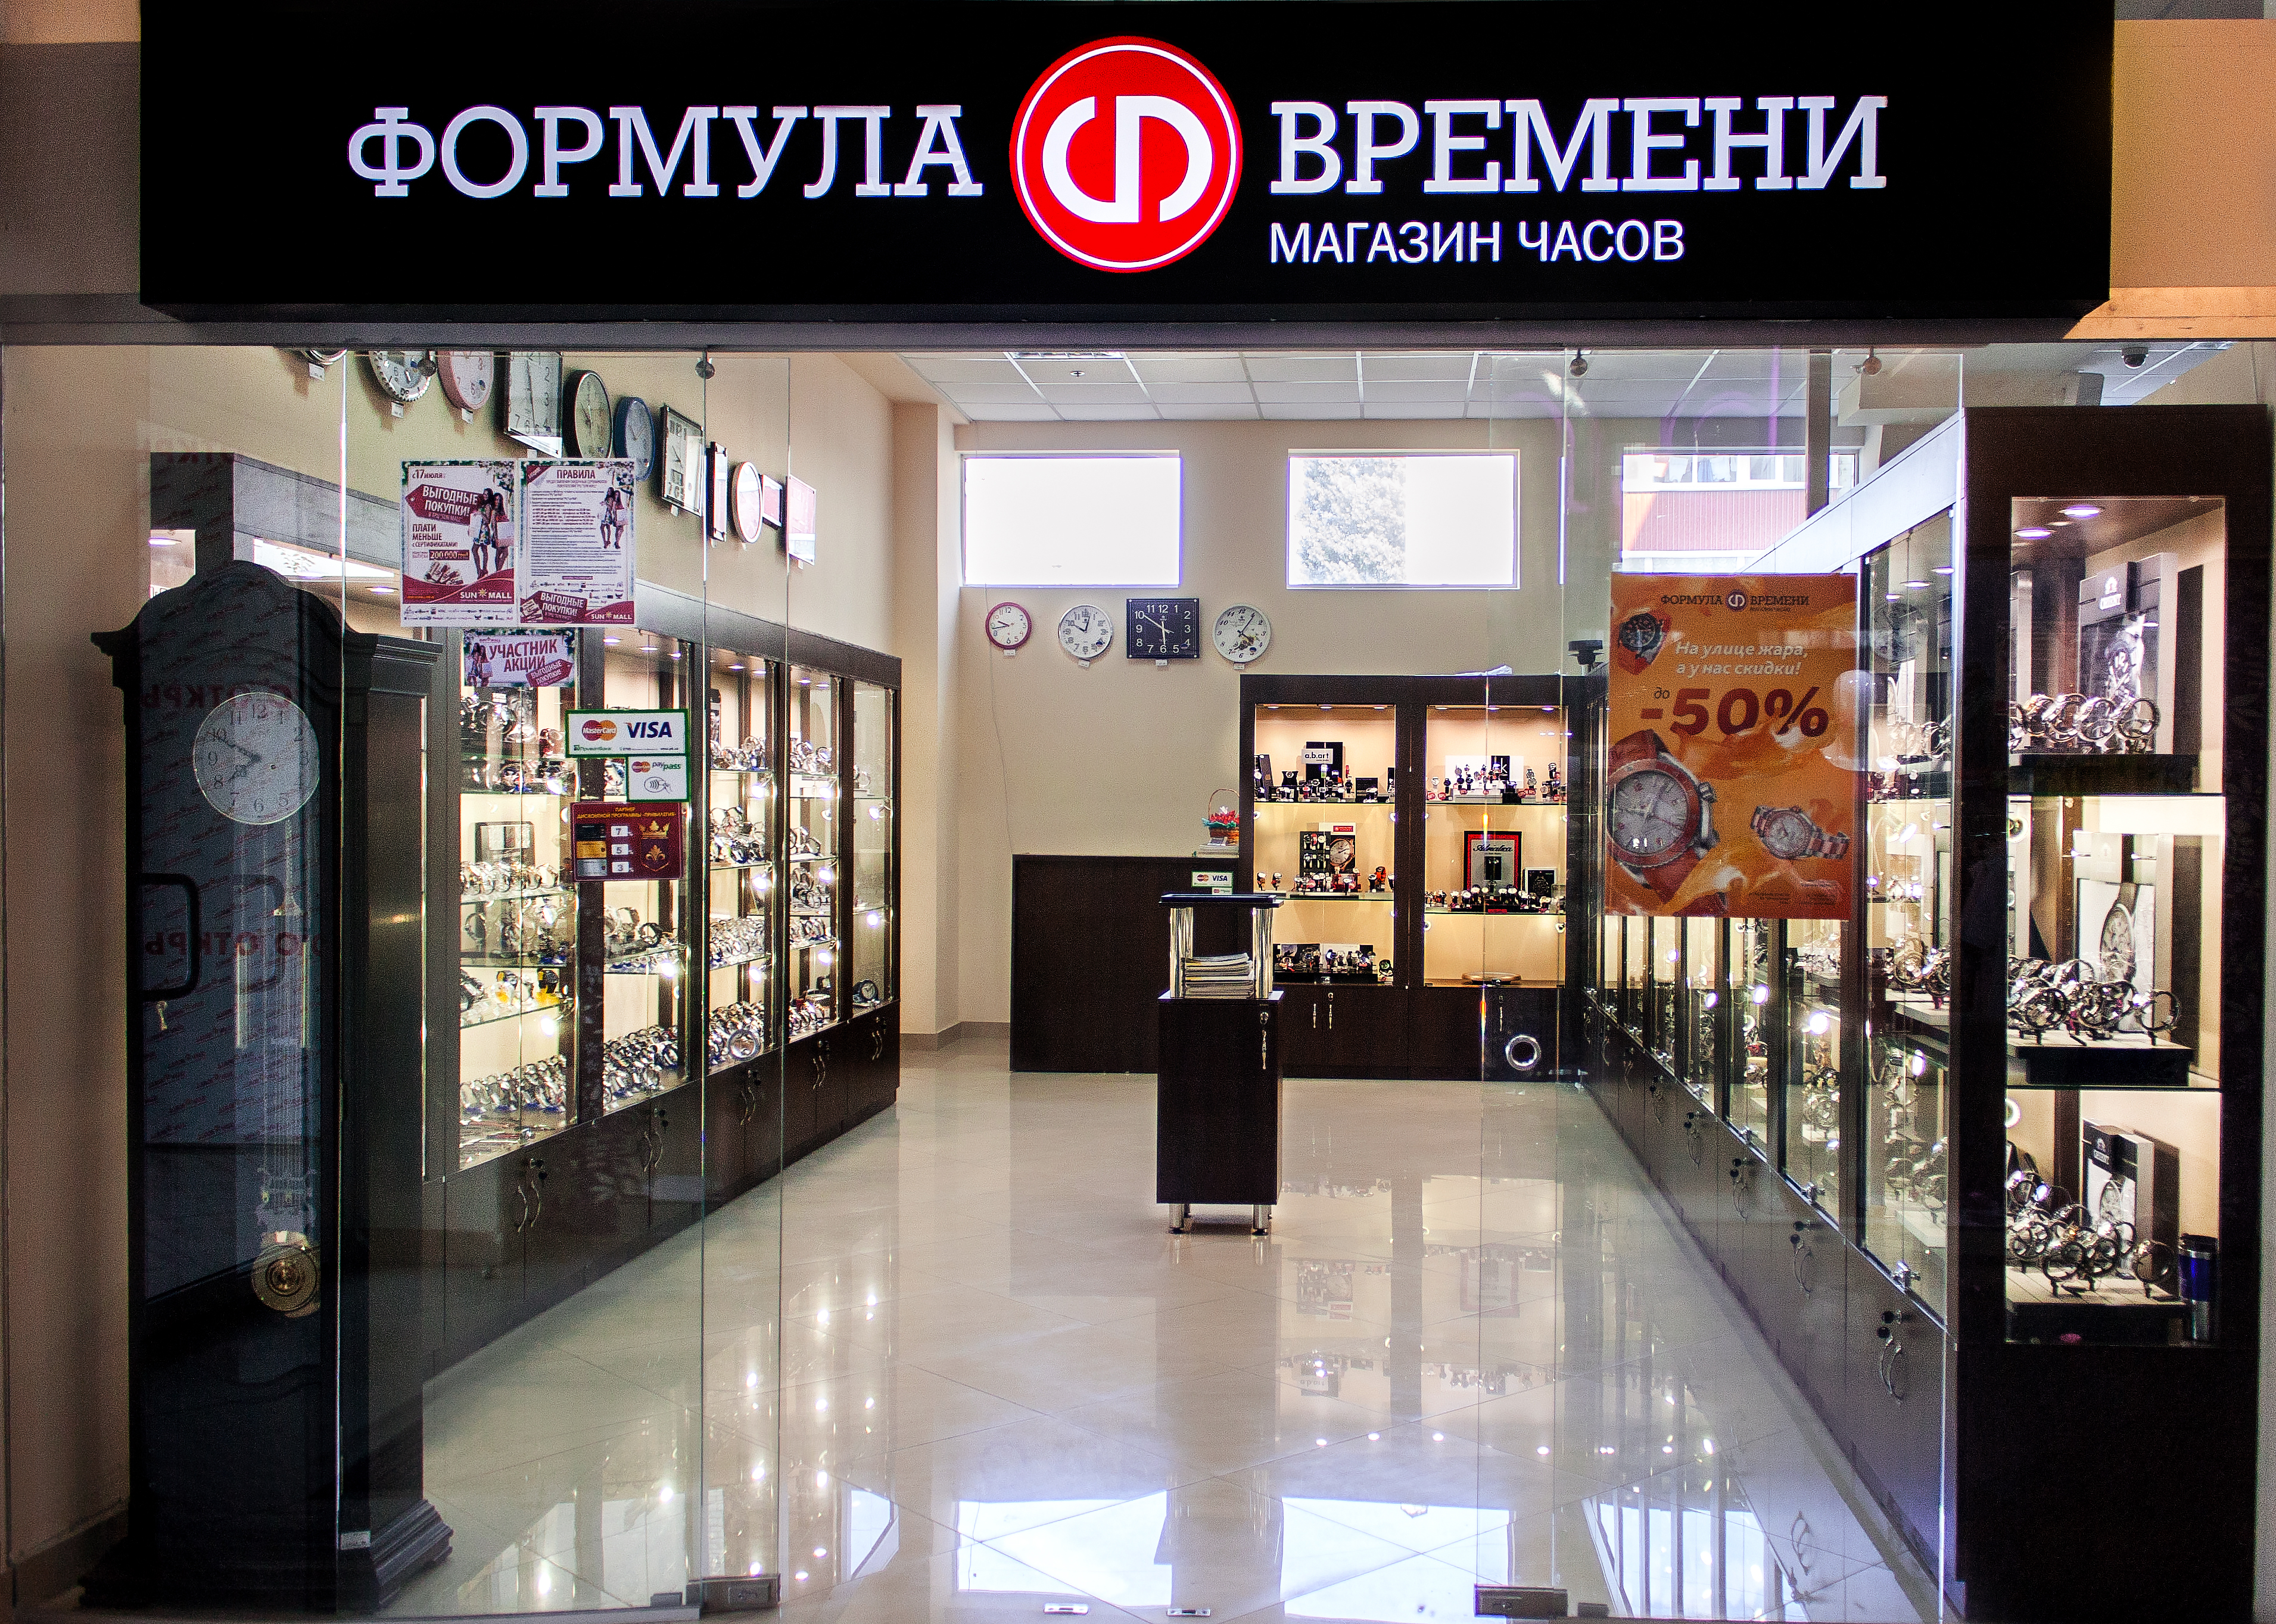 Часовой магазин часов. Магазин часов. Название магазина часов. Галерея времени. Магазин часов в Санкт-Петербурге.